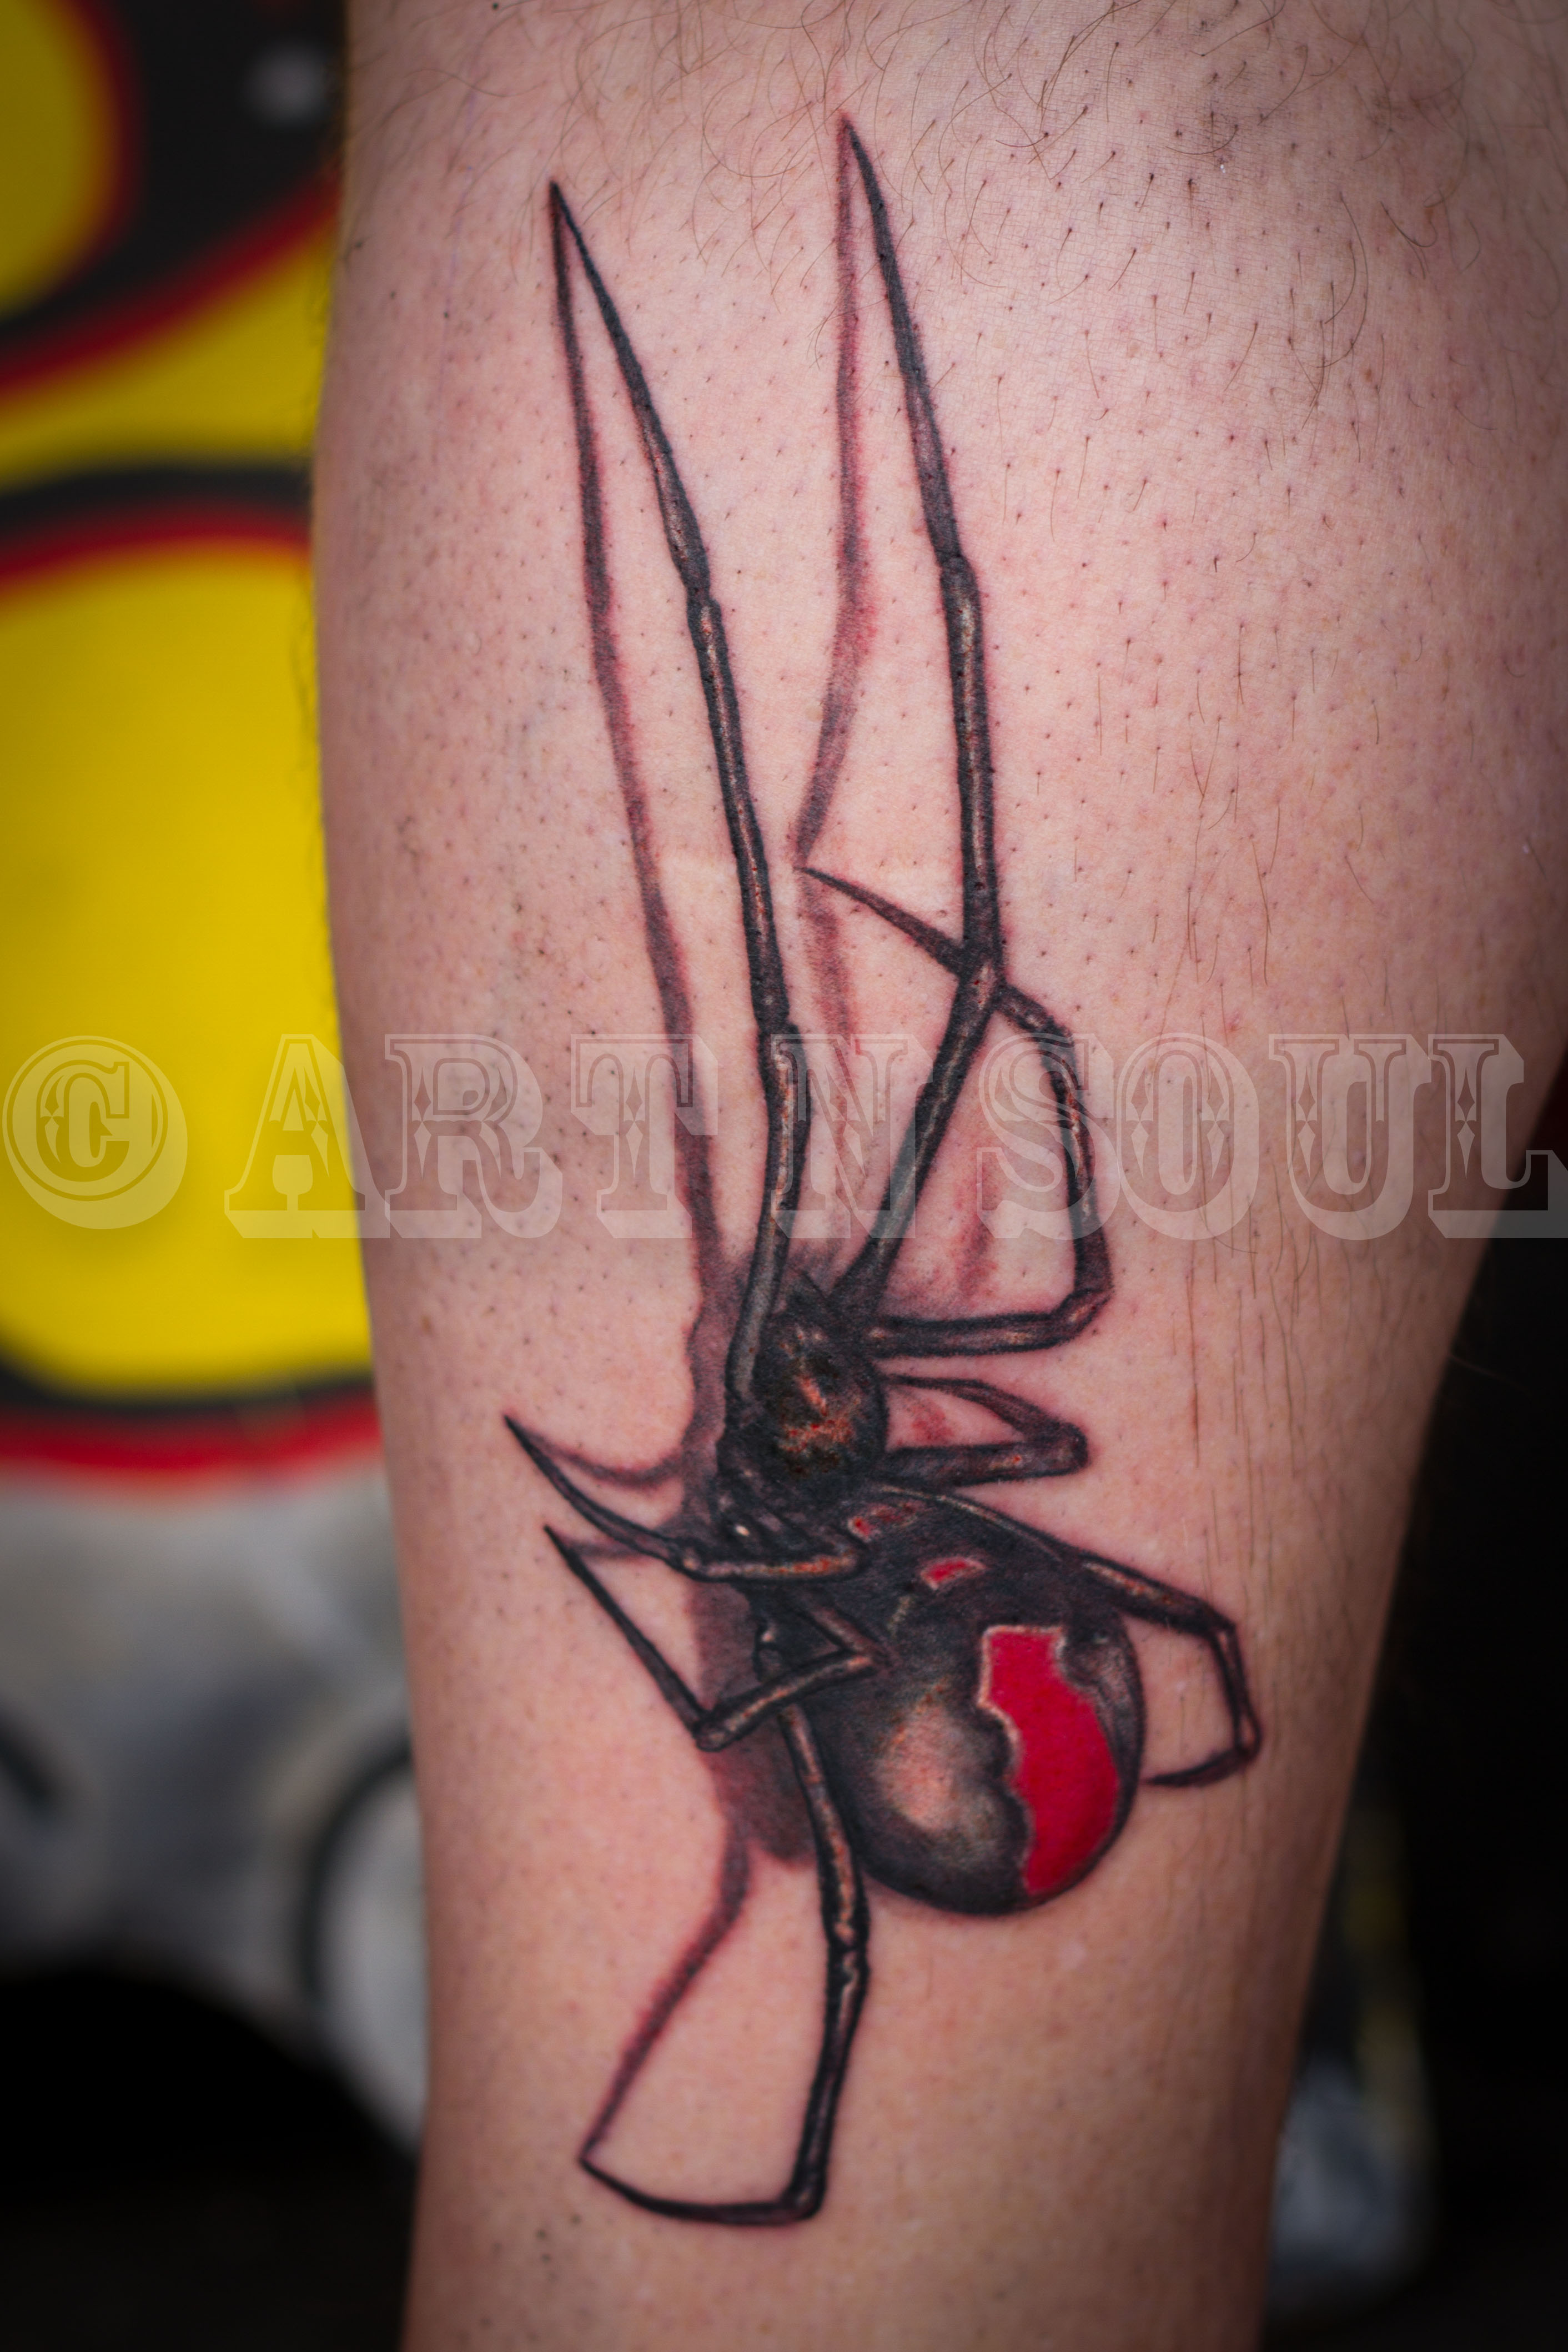 Tattoo uploaded by Darren Humphreys • 3d spider • Tattoodo